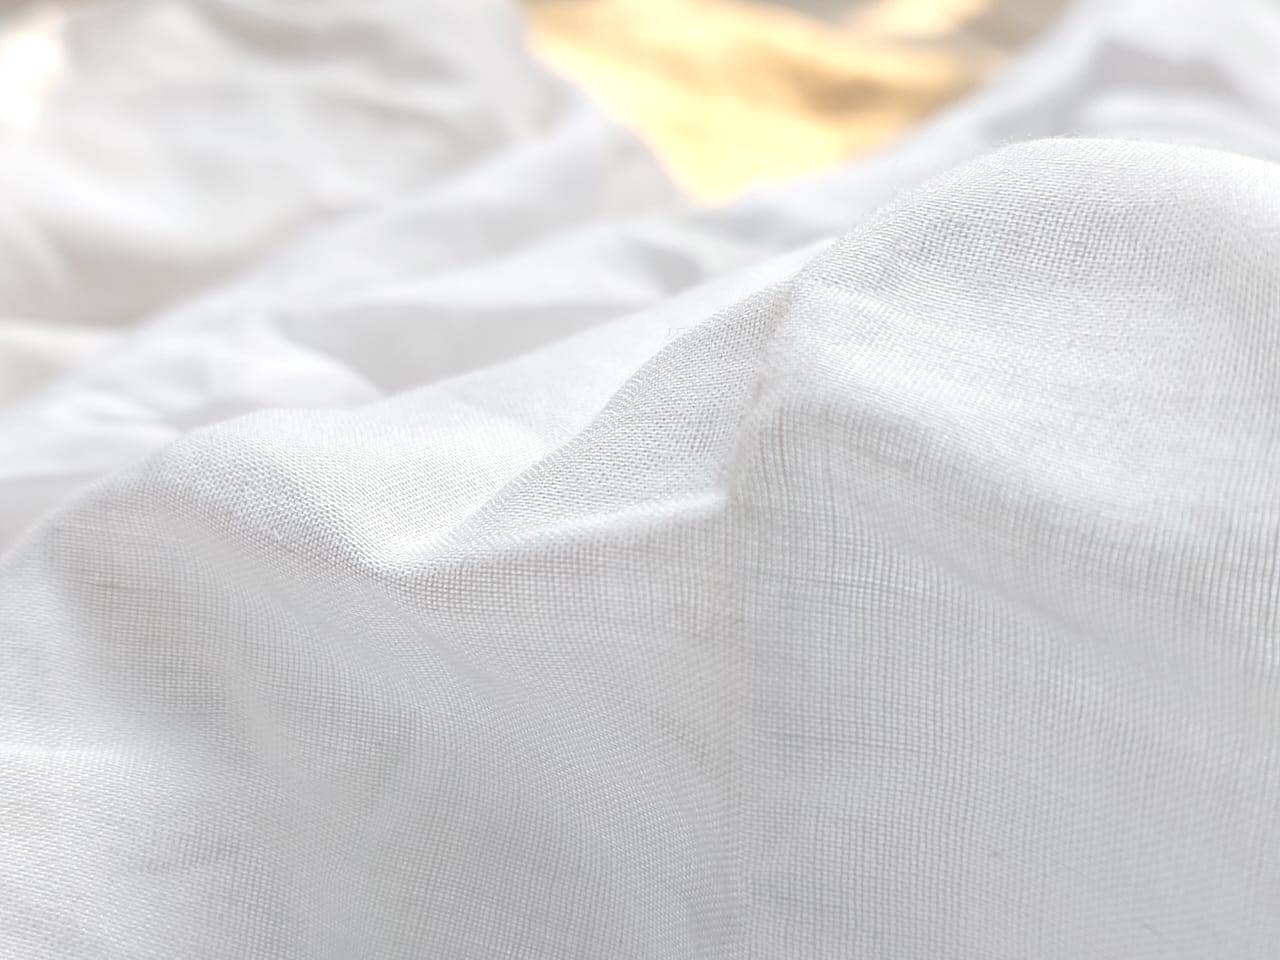 100% pure white cotton fabric